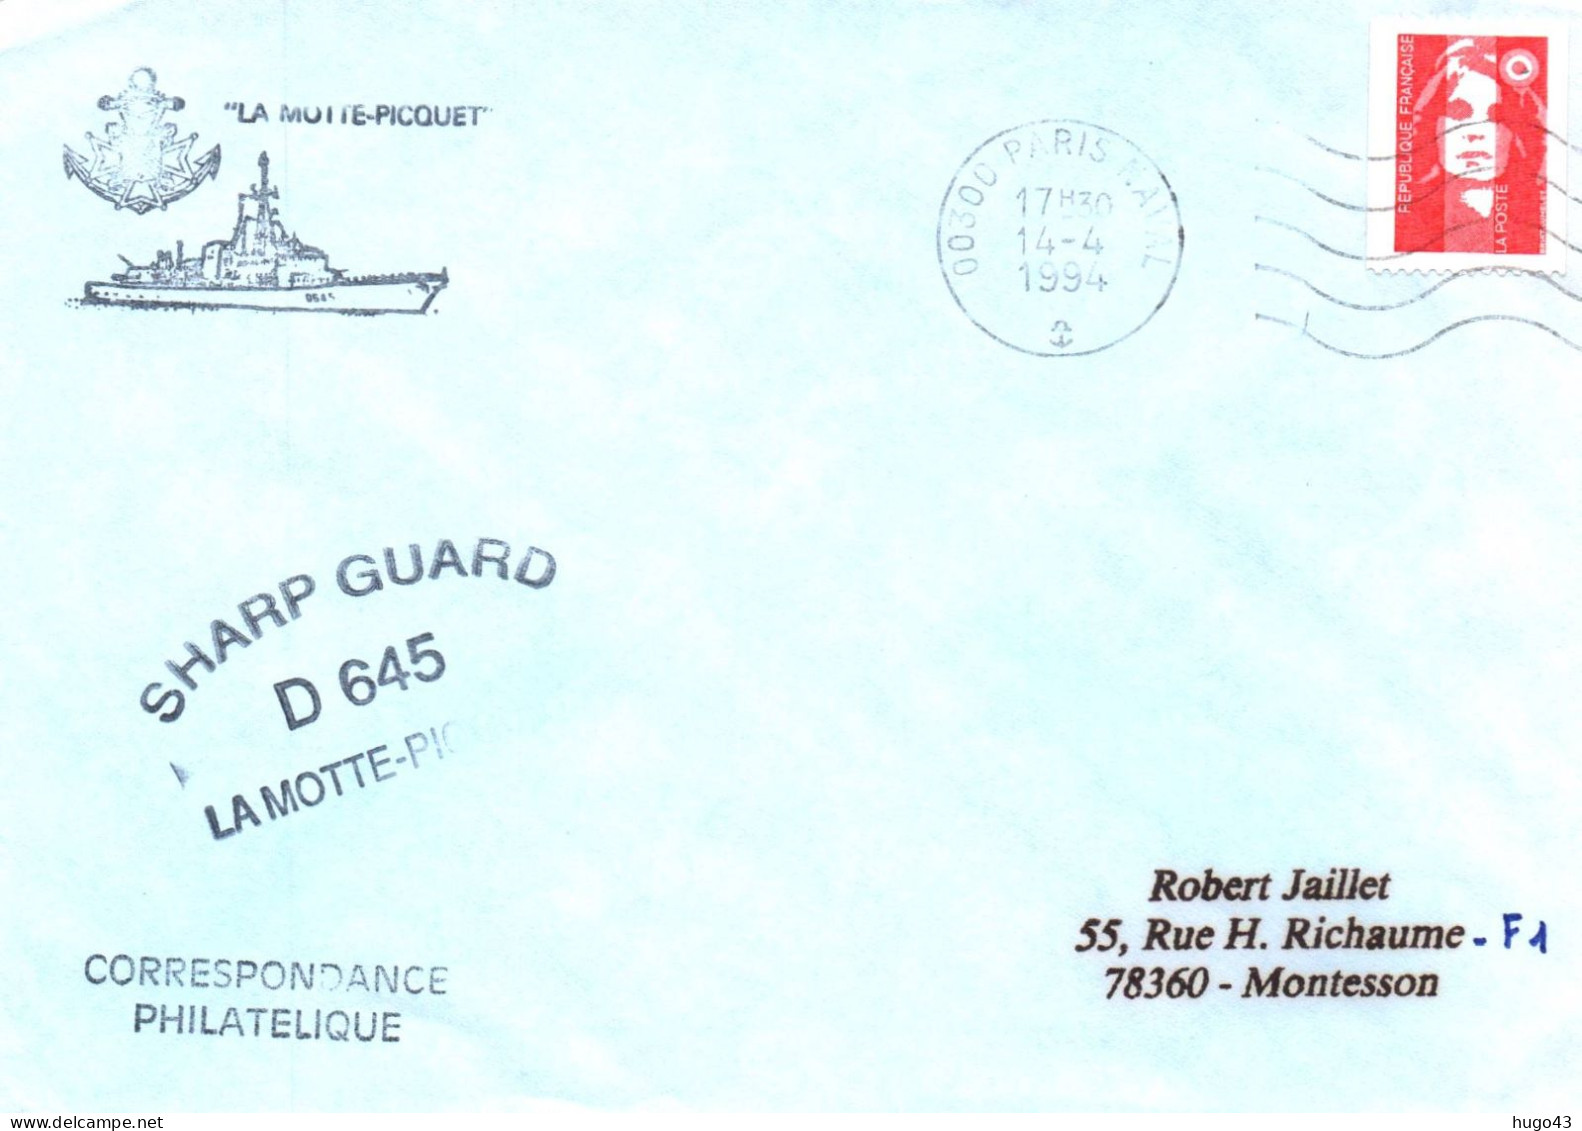 ENVELOPPE AVEC CACHET FREGATE FASM LA MOTTE PICQUET - SHARP GUARD D 645 - PARIS NAVAL LE 14/04/1994 - Naval Post